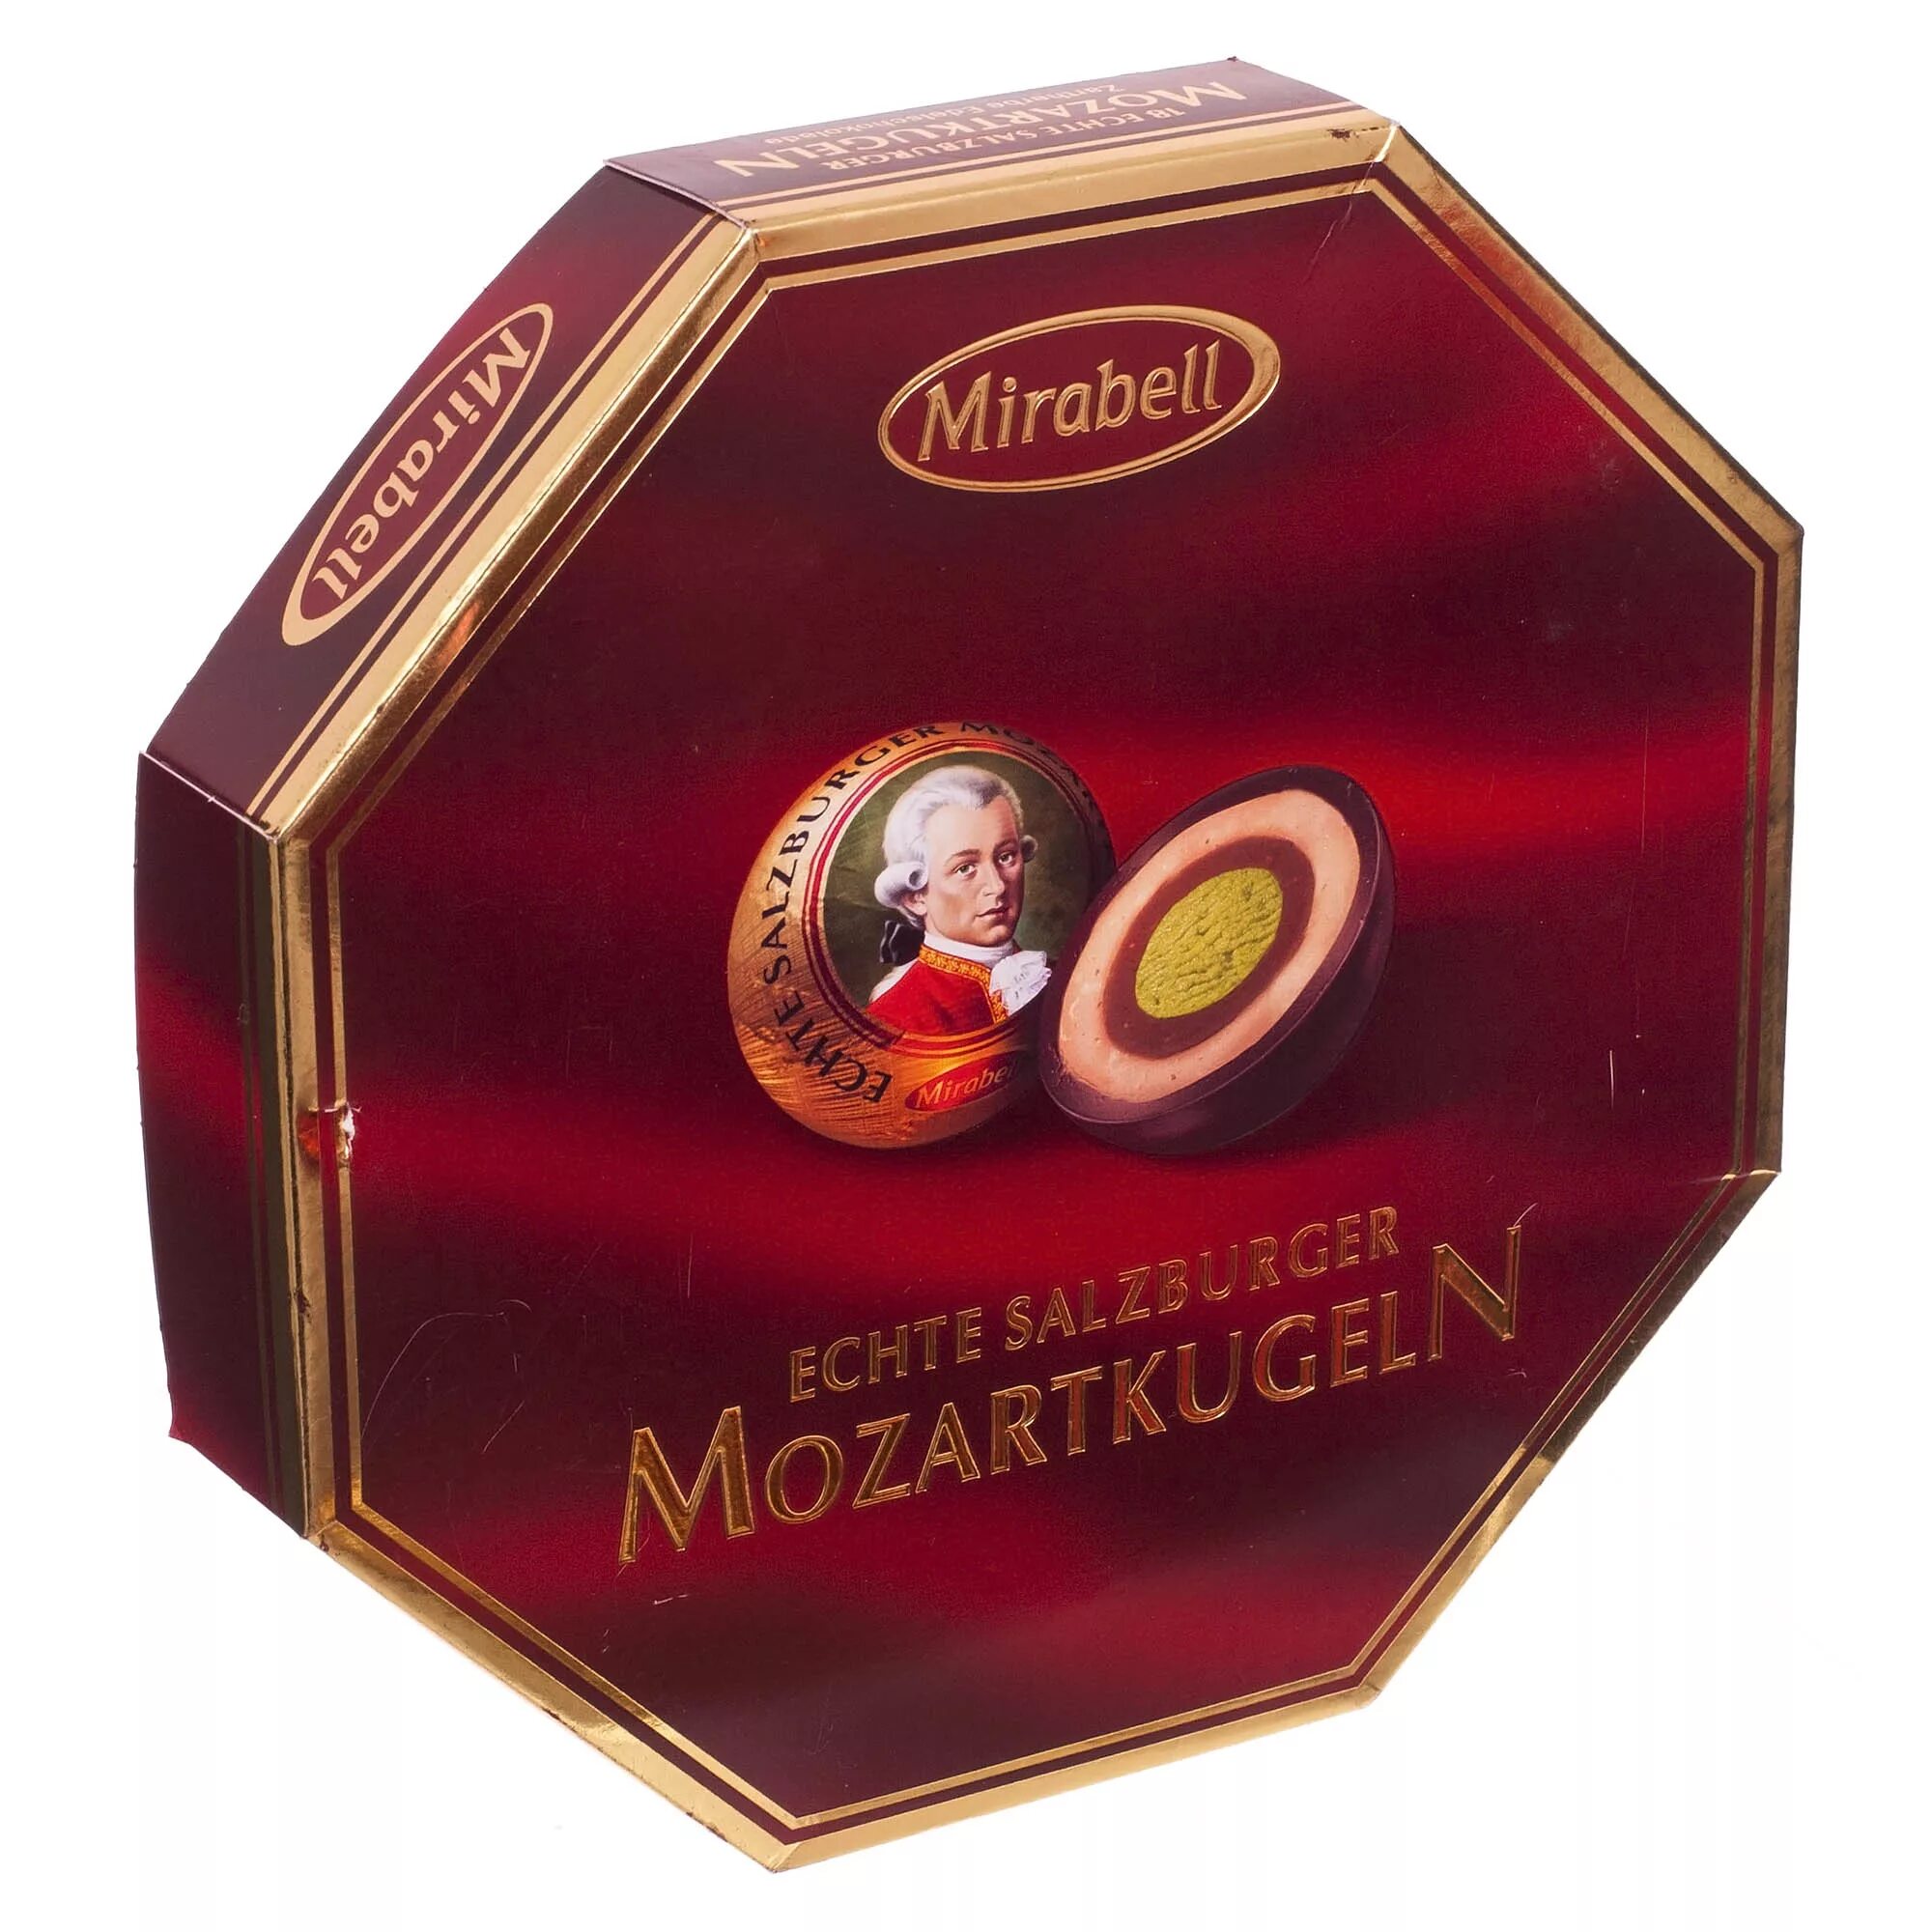 Конфеты Reber Mozart 300г. Линдт Моцарт конфеты. Австрийский шоколад Моцарт. 200г конфеты Mirabell Mozart Kugeln.